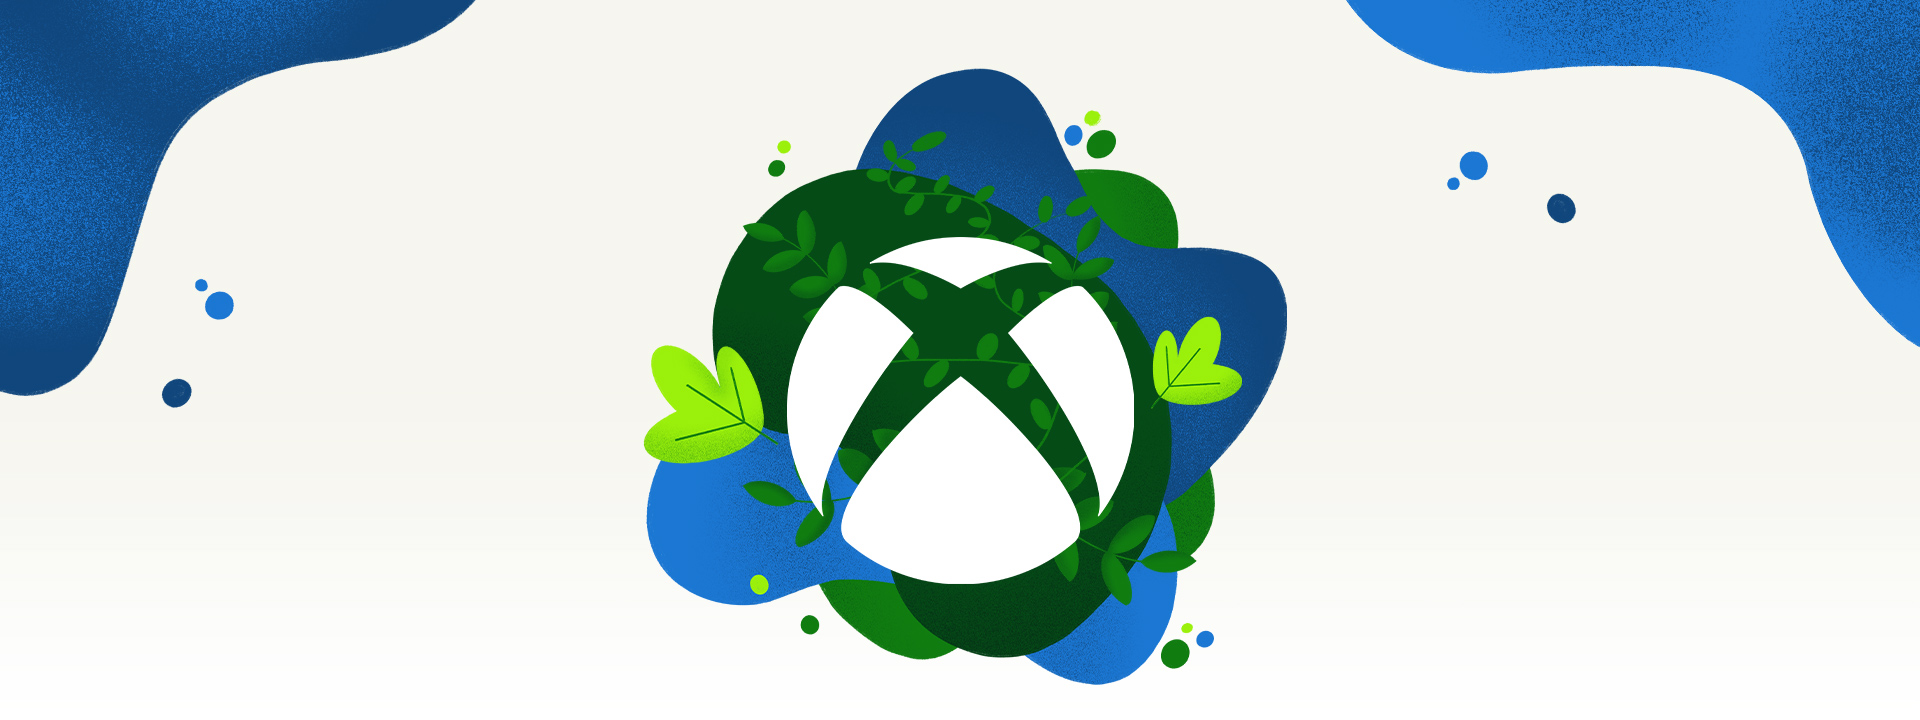 Xbox 徽标周围环绕着植被和蓝色的水花。